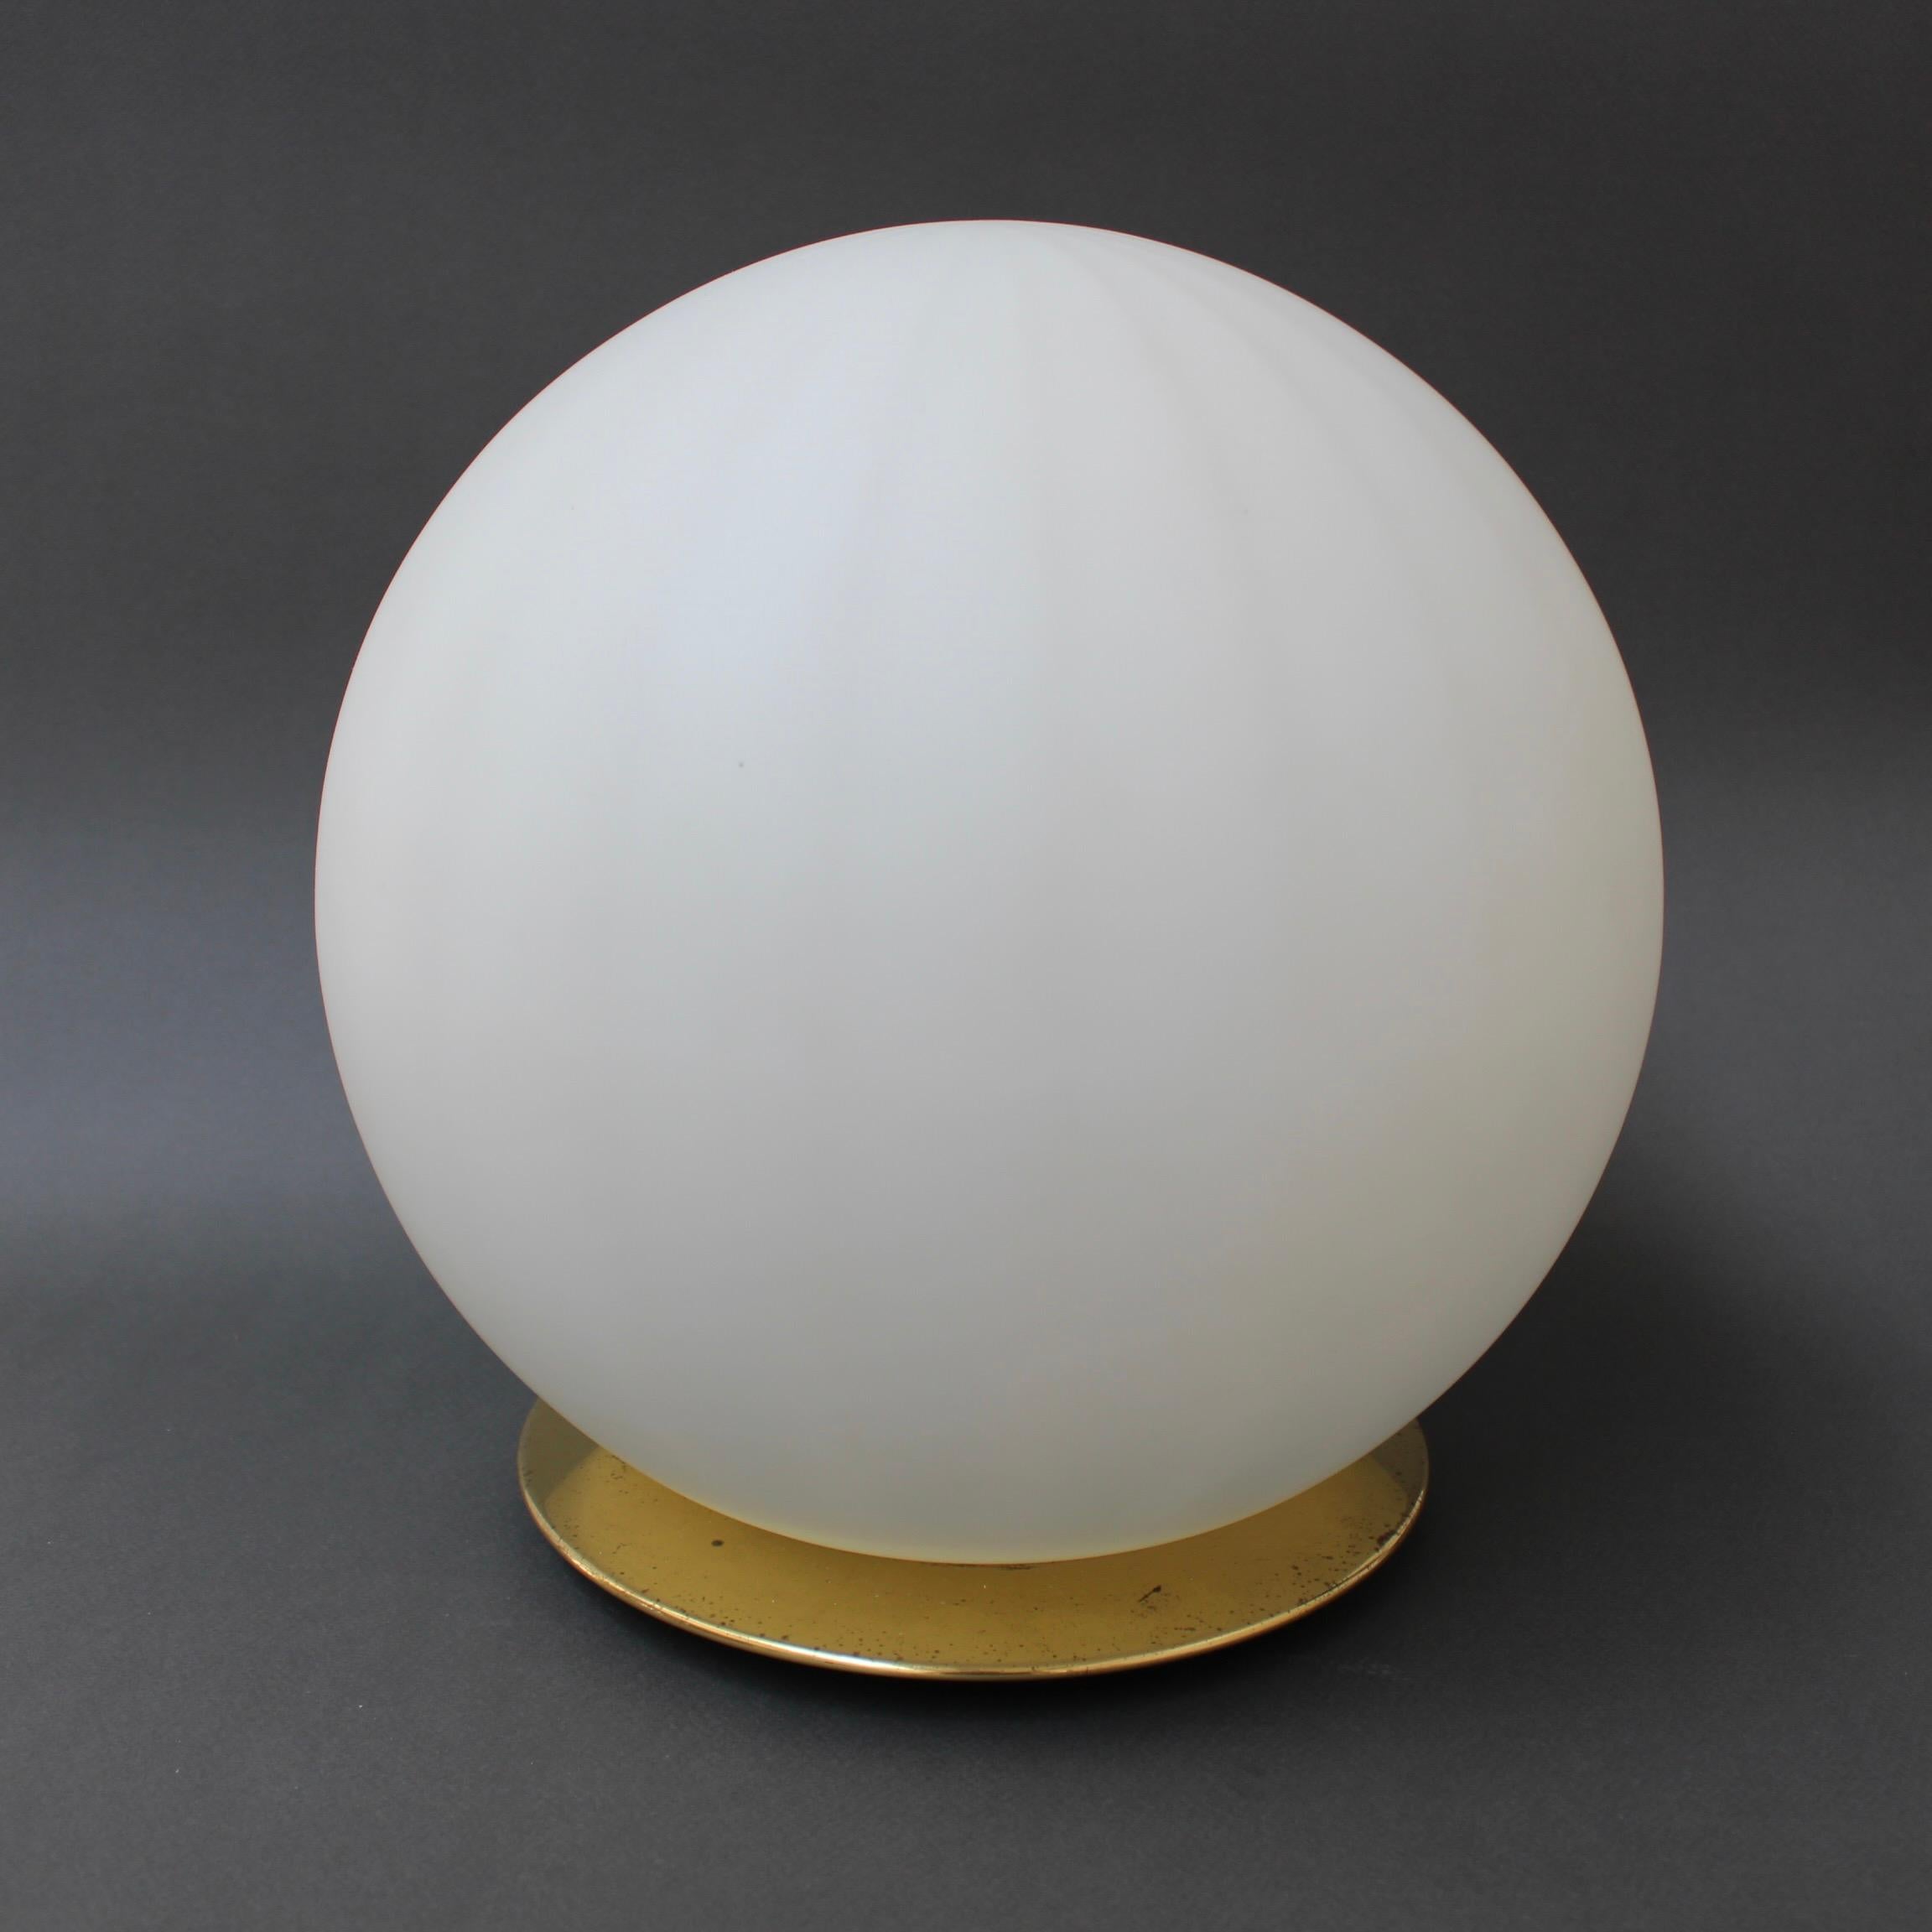 Lampe de table en verre de Murano des années 1970. Moderniste et élégante, cette lampe de table soufflée de Murano offre une source d'éclairage à la fois utilitaire et décorative. Les subtiles lignes longitudinales capturent et amplifient